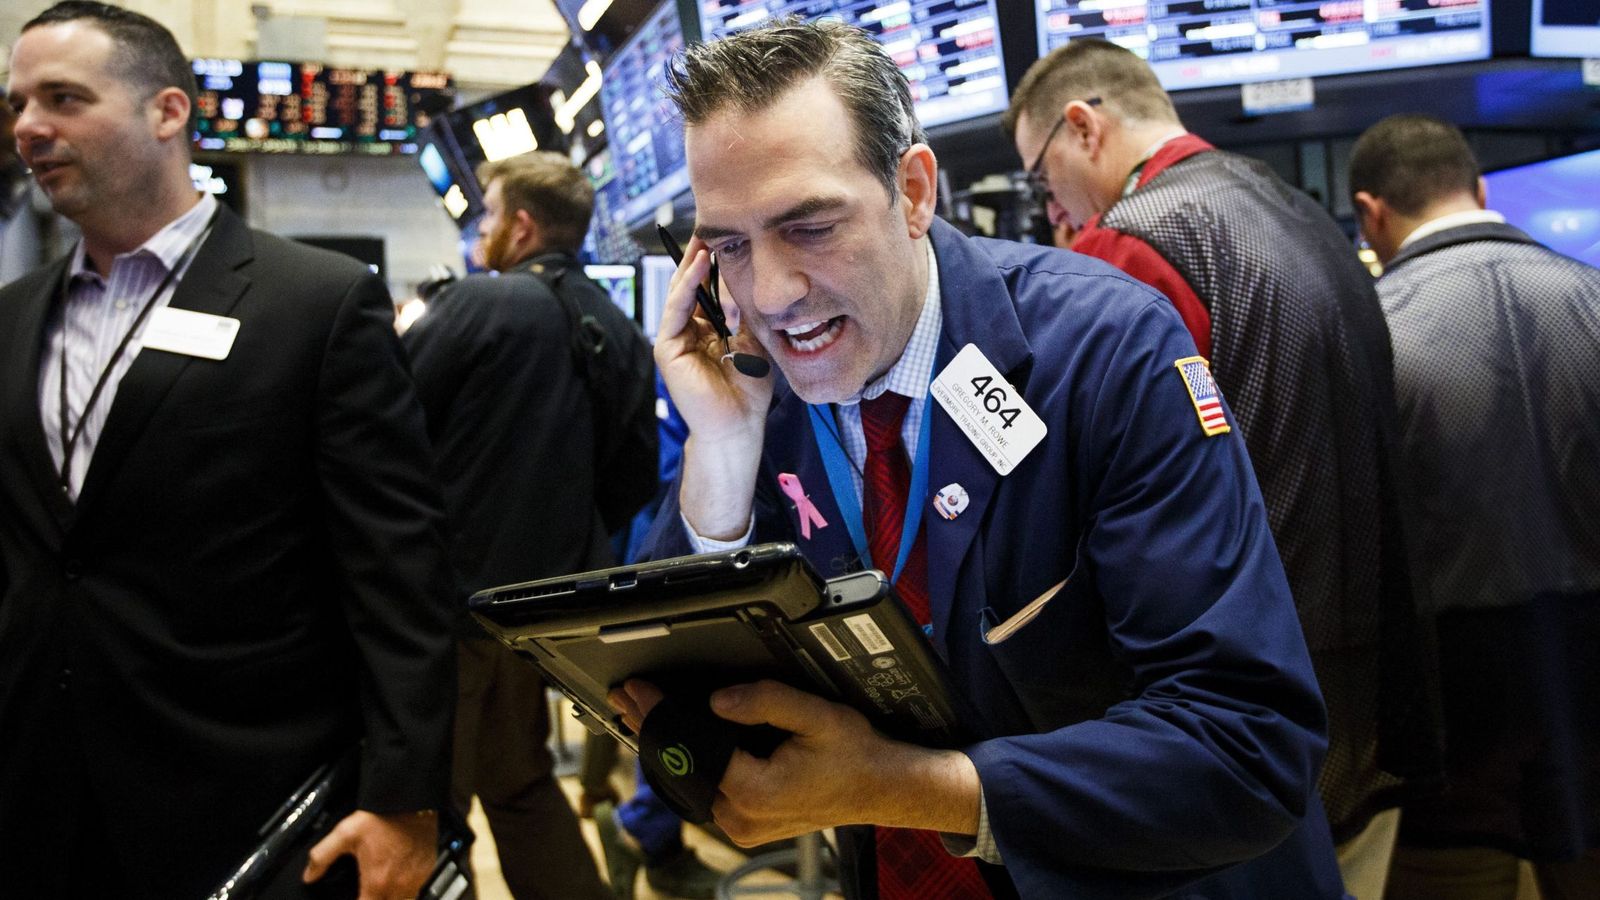 Foto: Varios agentes de la Bolsa de Nueva York reaccionan ante la caída del índice Dow Jones como consecuencia de la victoria del Brexit. (EFE)